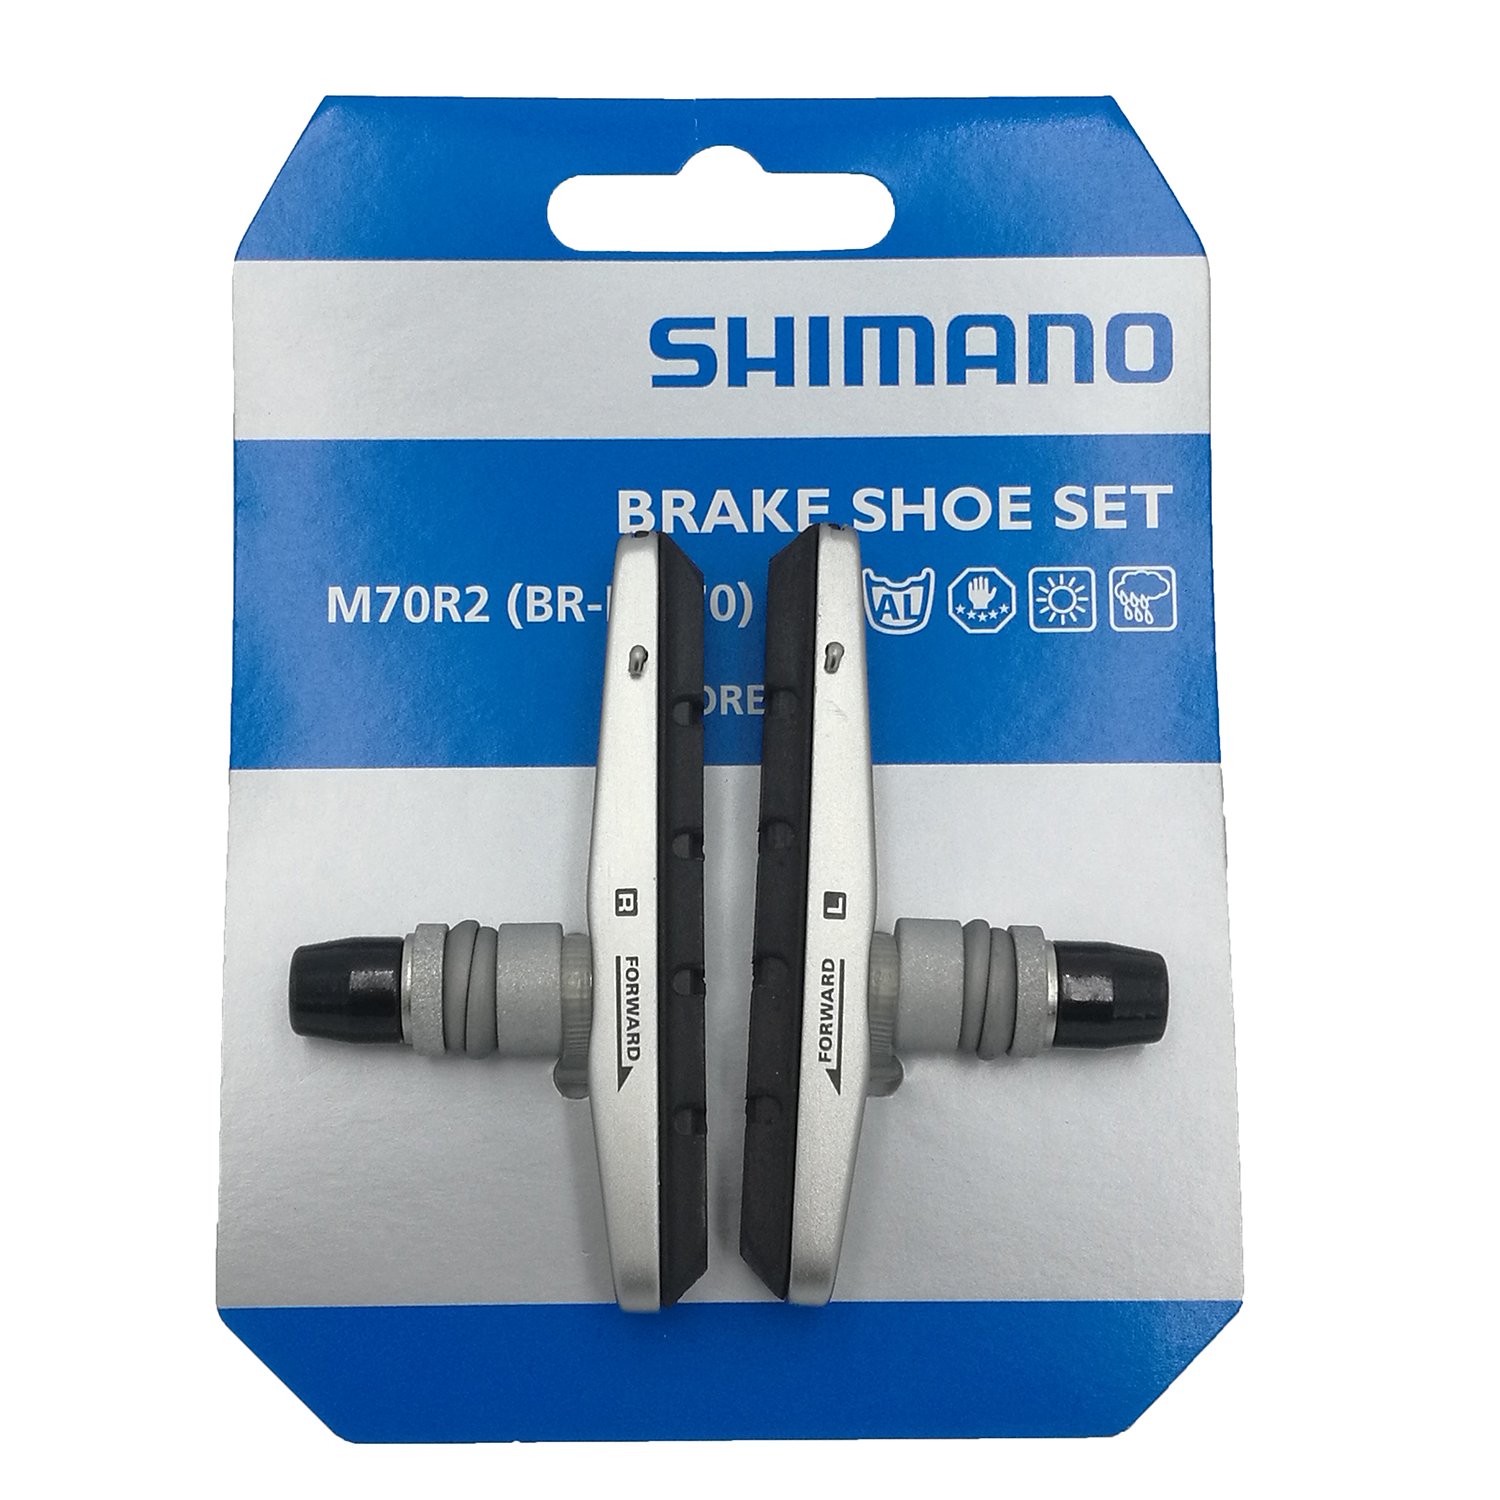 Тормозные колодки SHIMANO для v-brake M70R2, картриджные комплект к br-m770 Y8EM9802A комплект оборудования falcon eyes bloggerkit 06 mic для видеосъёмки